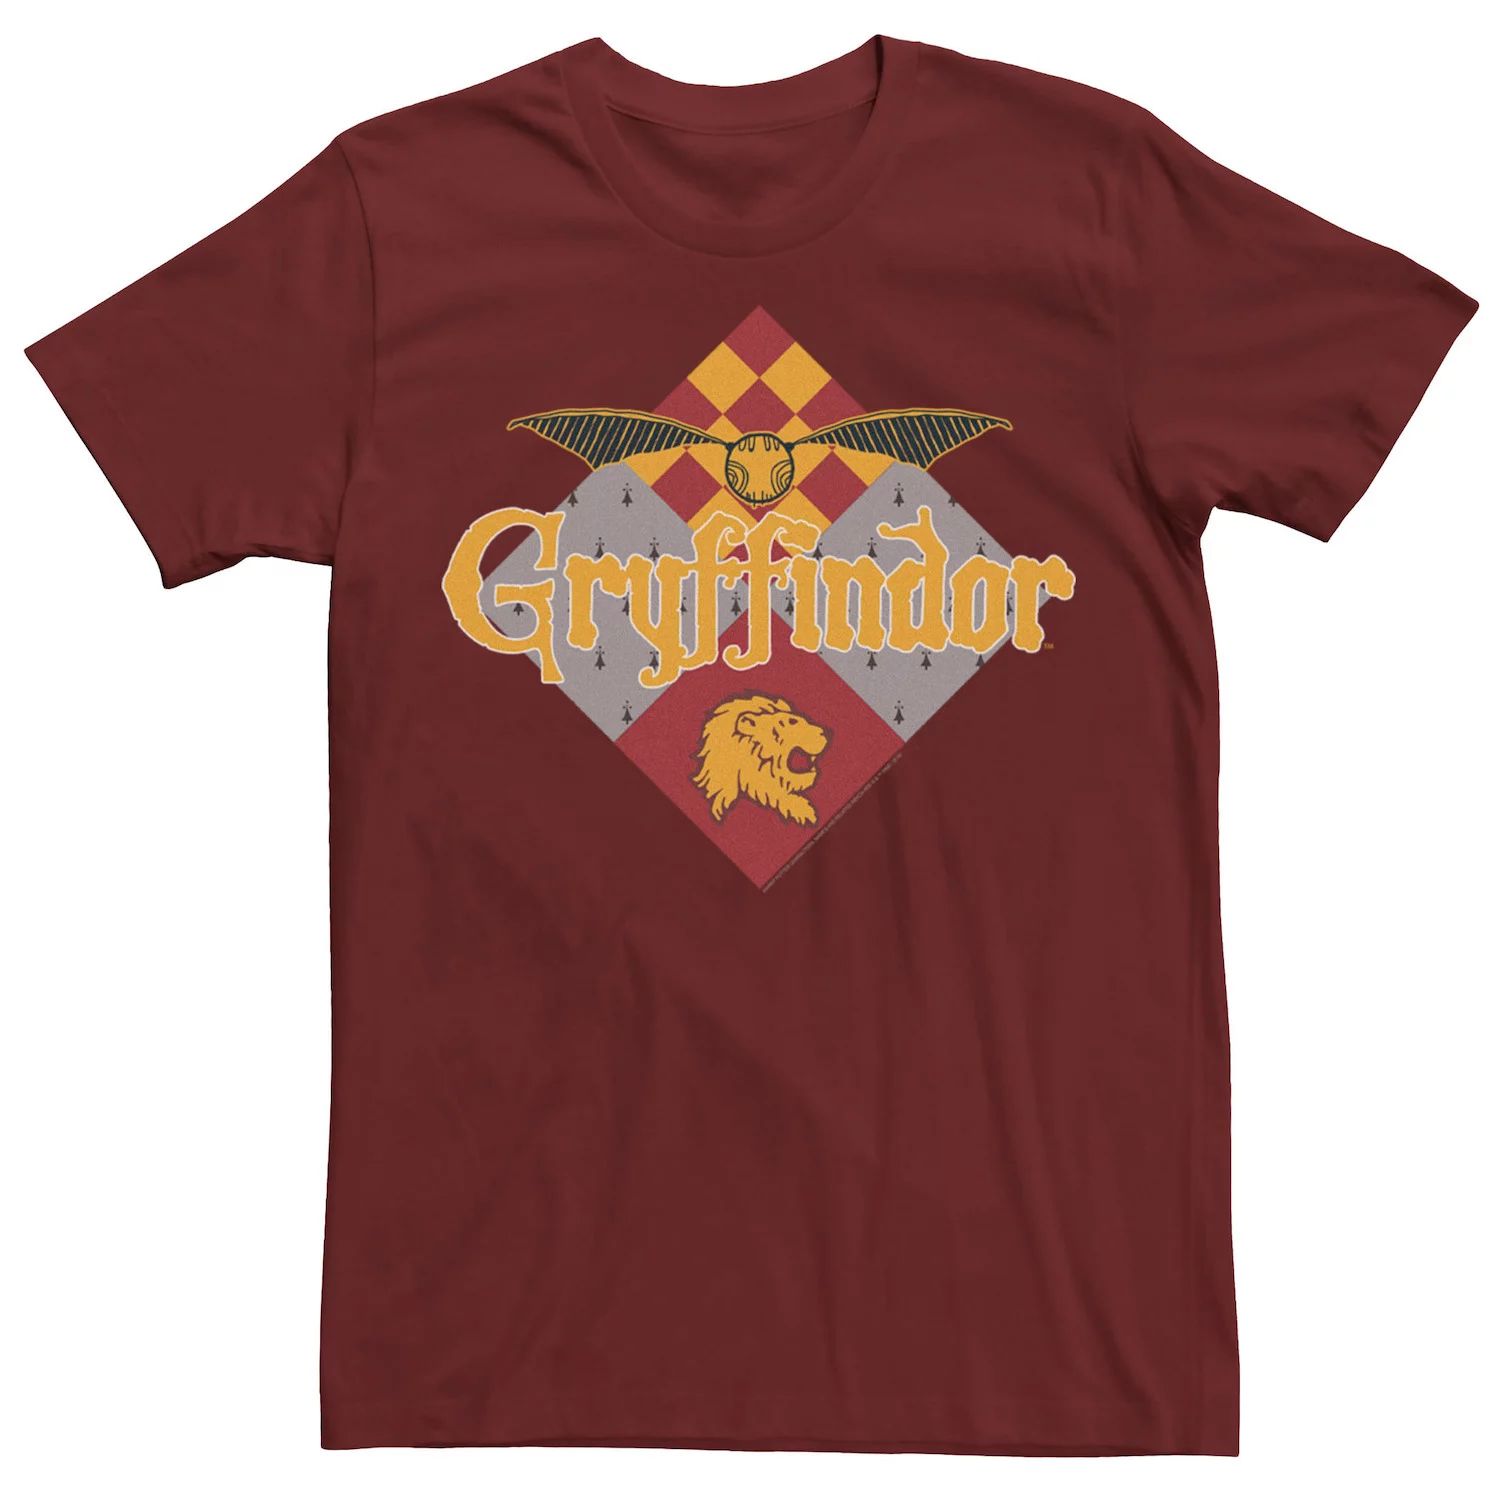 Мужская футболка с логотипом Gryffindor Golden Snitch Harry Potter брелок abystyle harry potter golden snitch